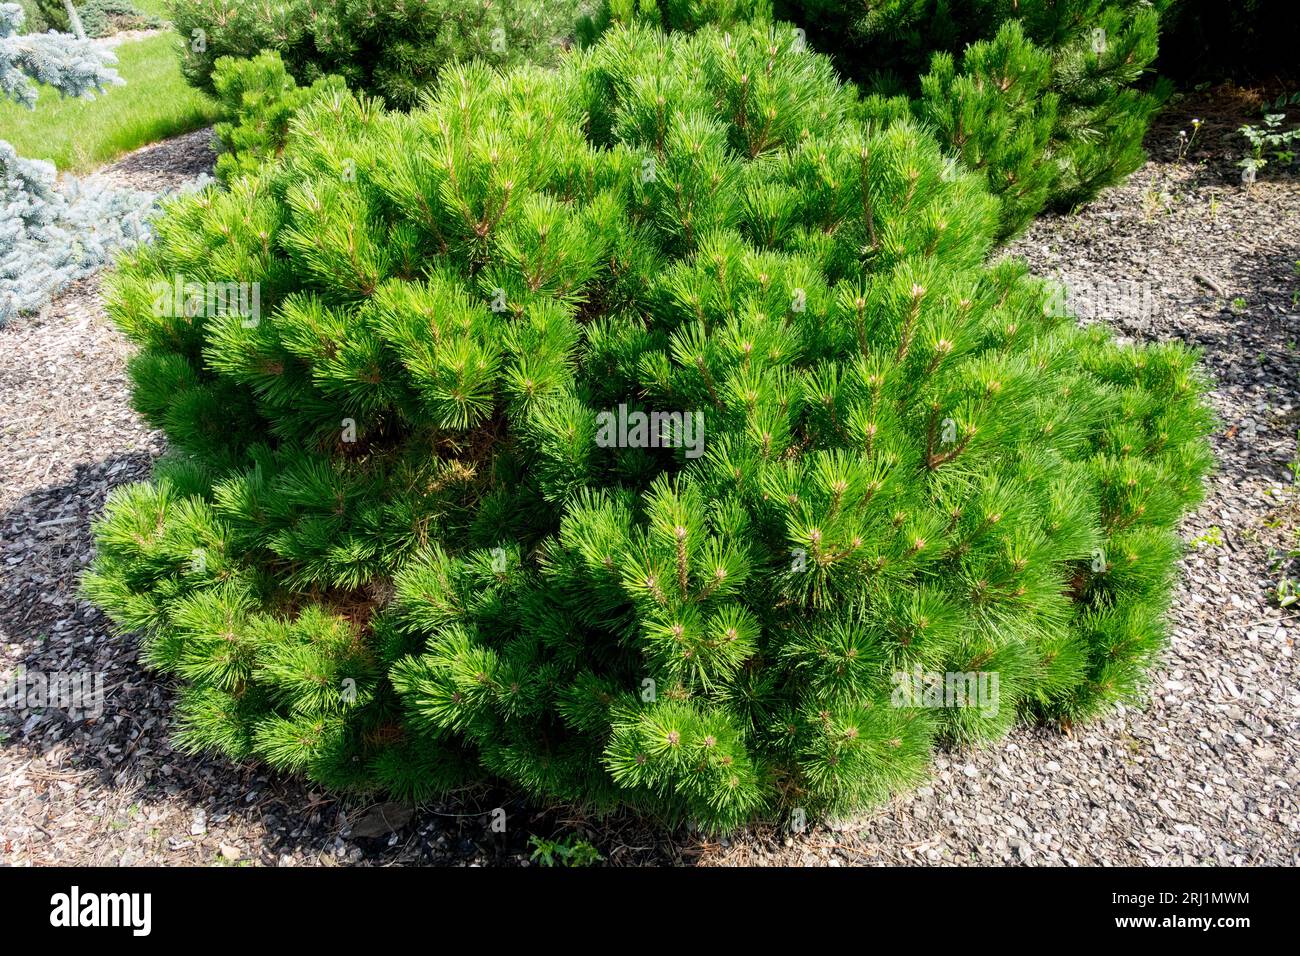 PIN noir européen Pinus nigra 'Compacta' jardin de pins autrichiens Pinus Dwarf Conifer PIN européen conifères plante coussin de pin noir Compact Shaped Banque D'Images